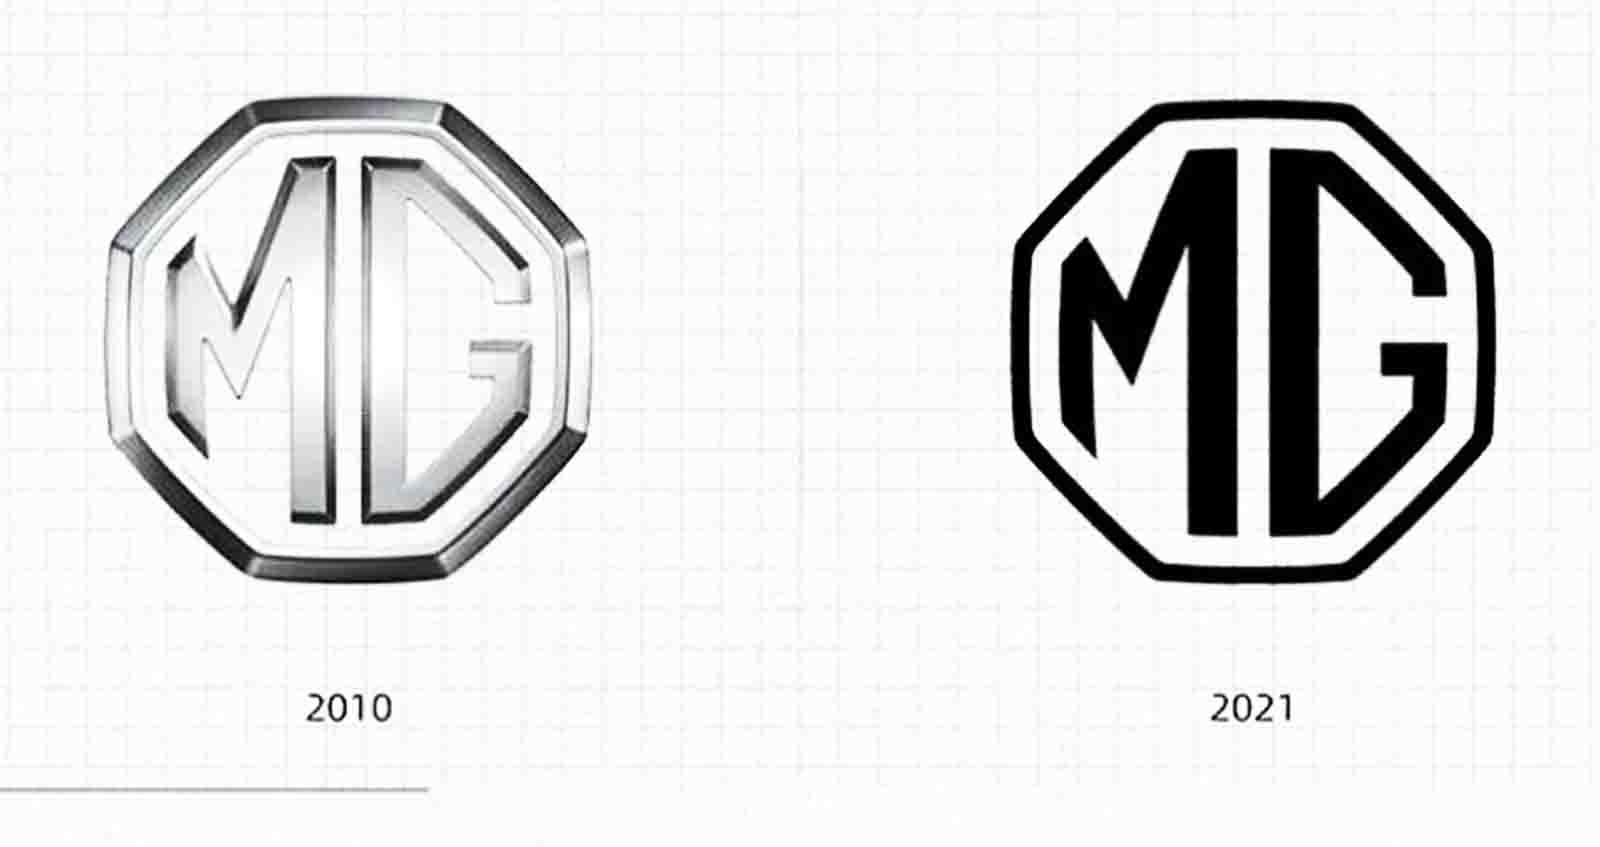 MG ปรับโลโก้ในรอบ 11 ปี พร้อมติดคันแรก MG Cyberster